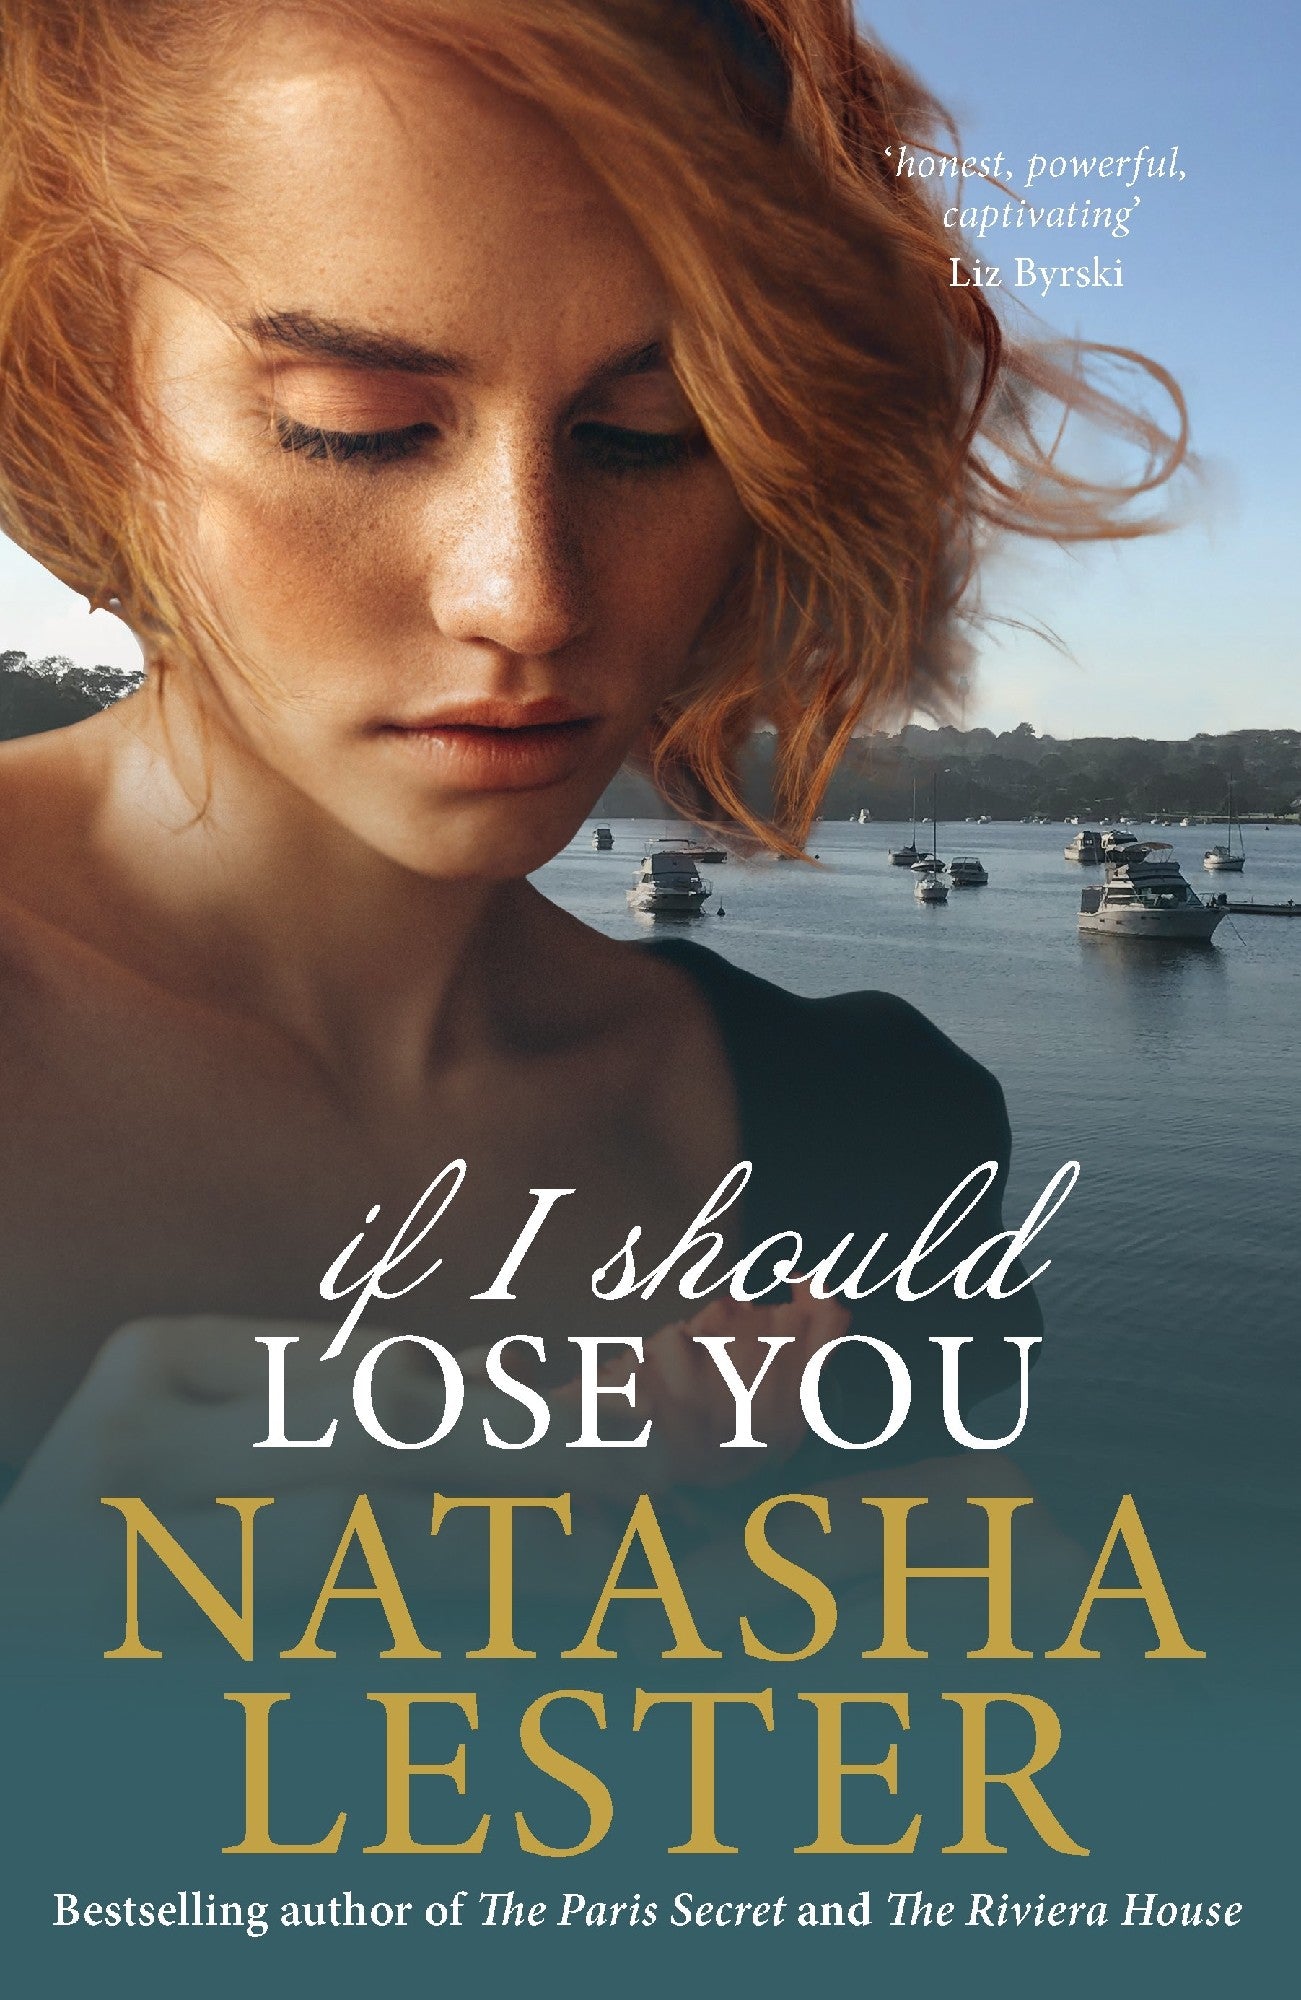 If I Should Lose You - Natasha Lester